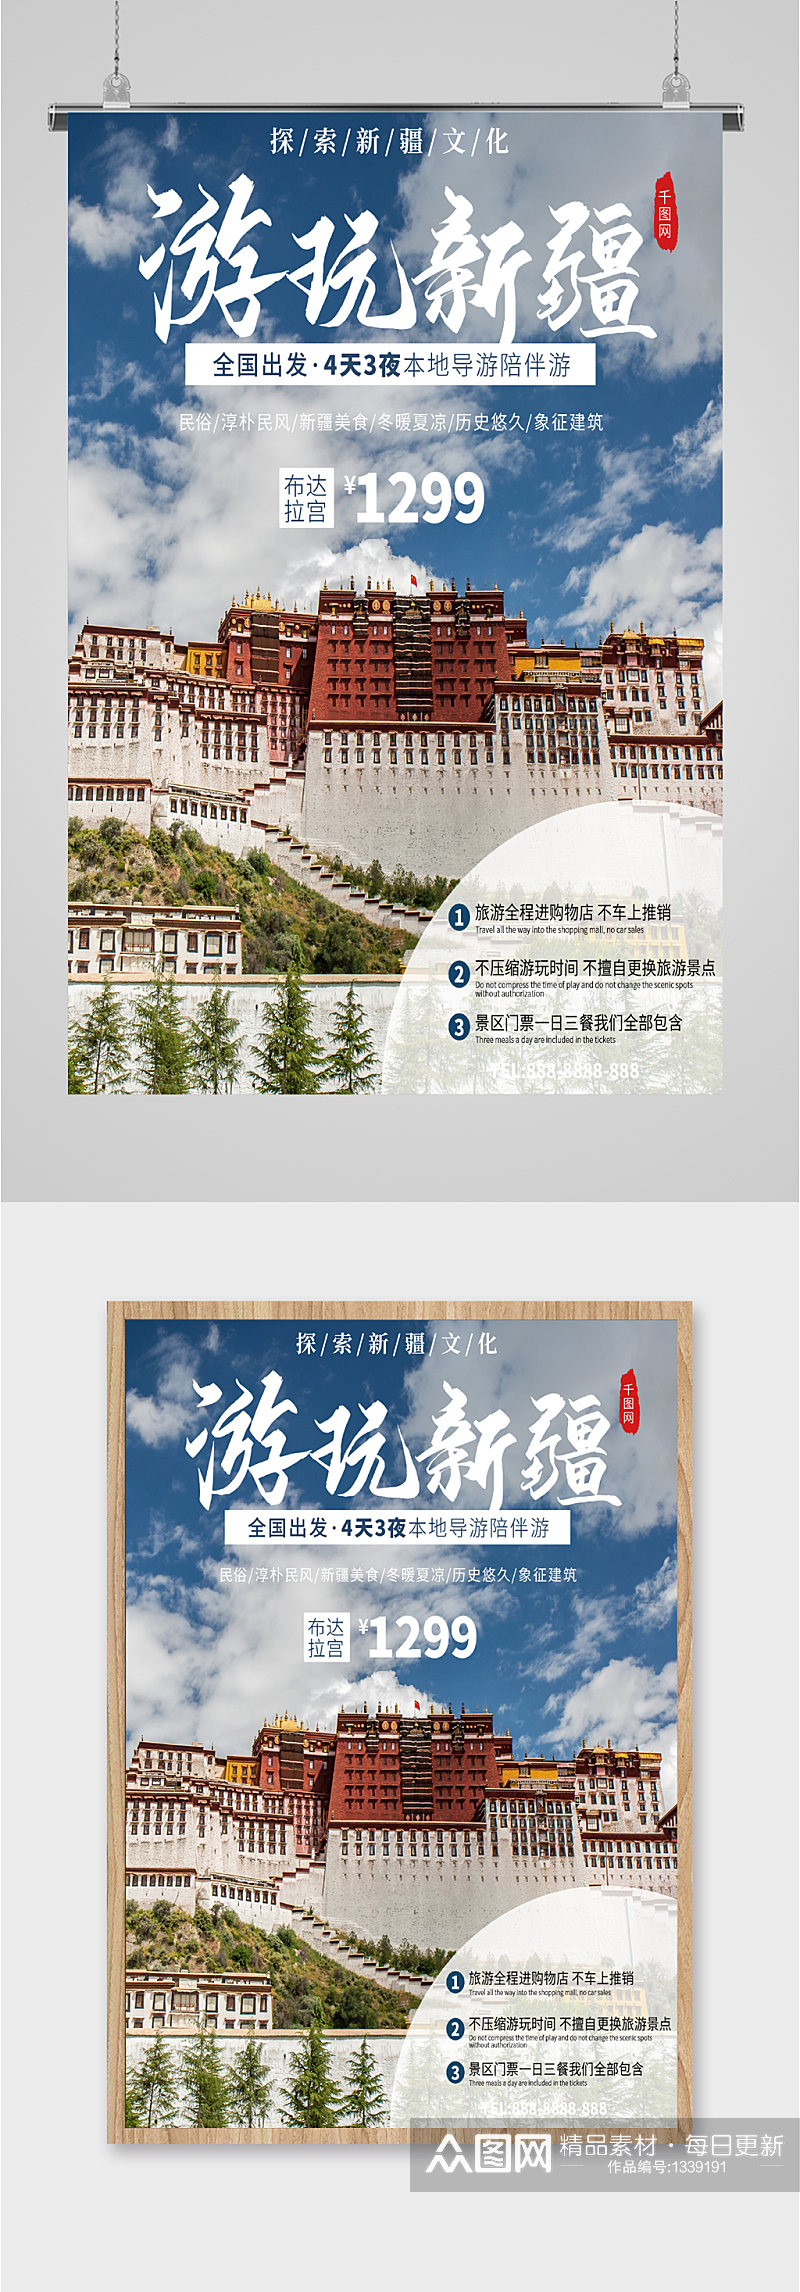 新疆游玩旅游旅行社宣传海报素材